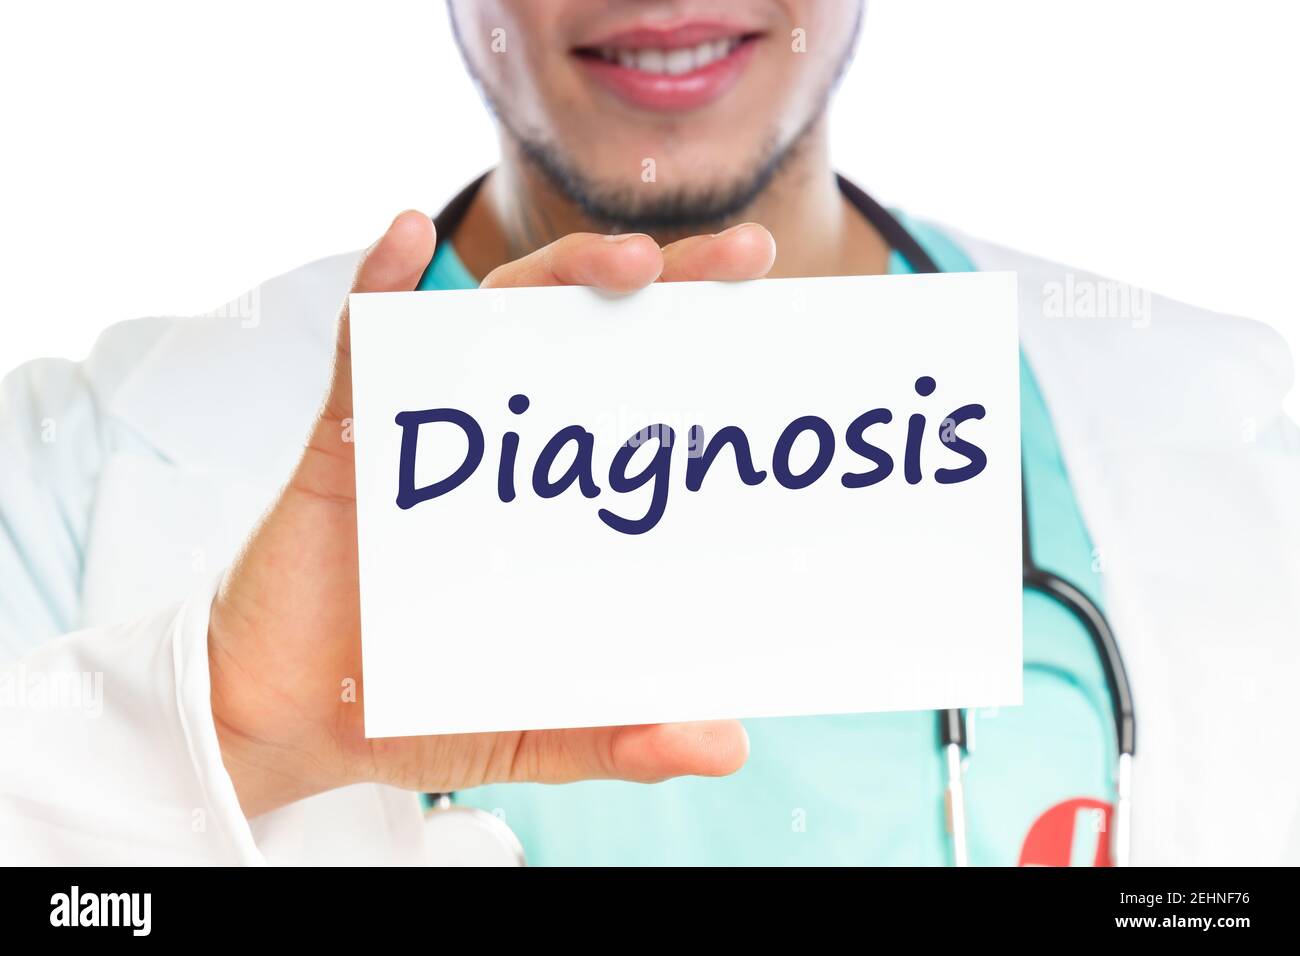 La diagnosi di malattia malattia malato sano health check-up medico di screening con segno Foto Stock